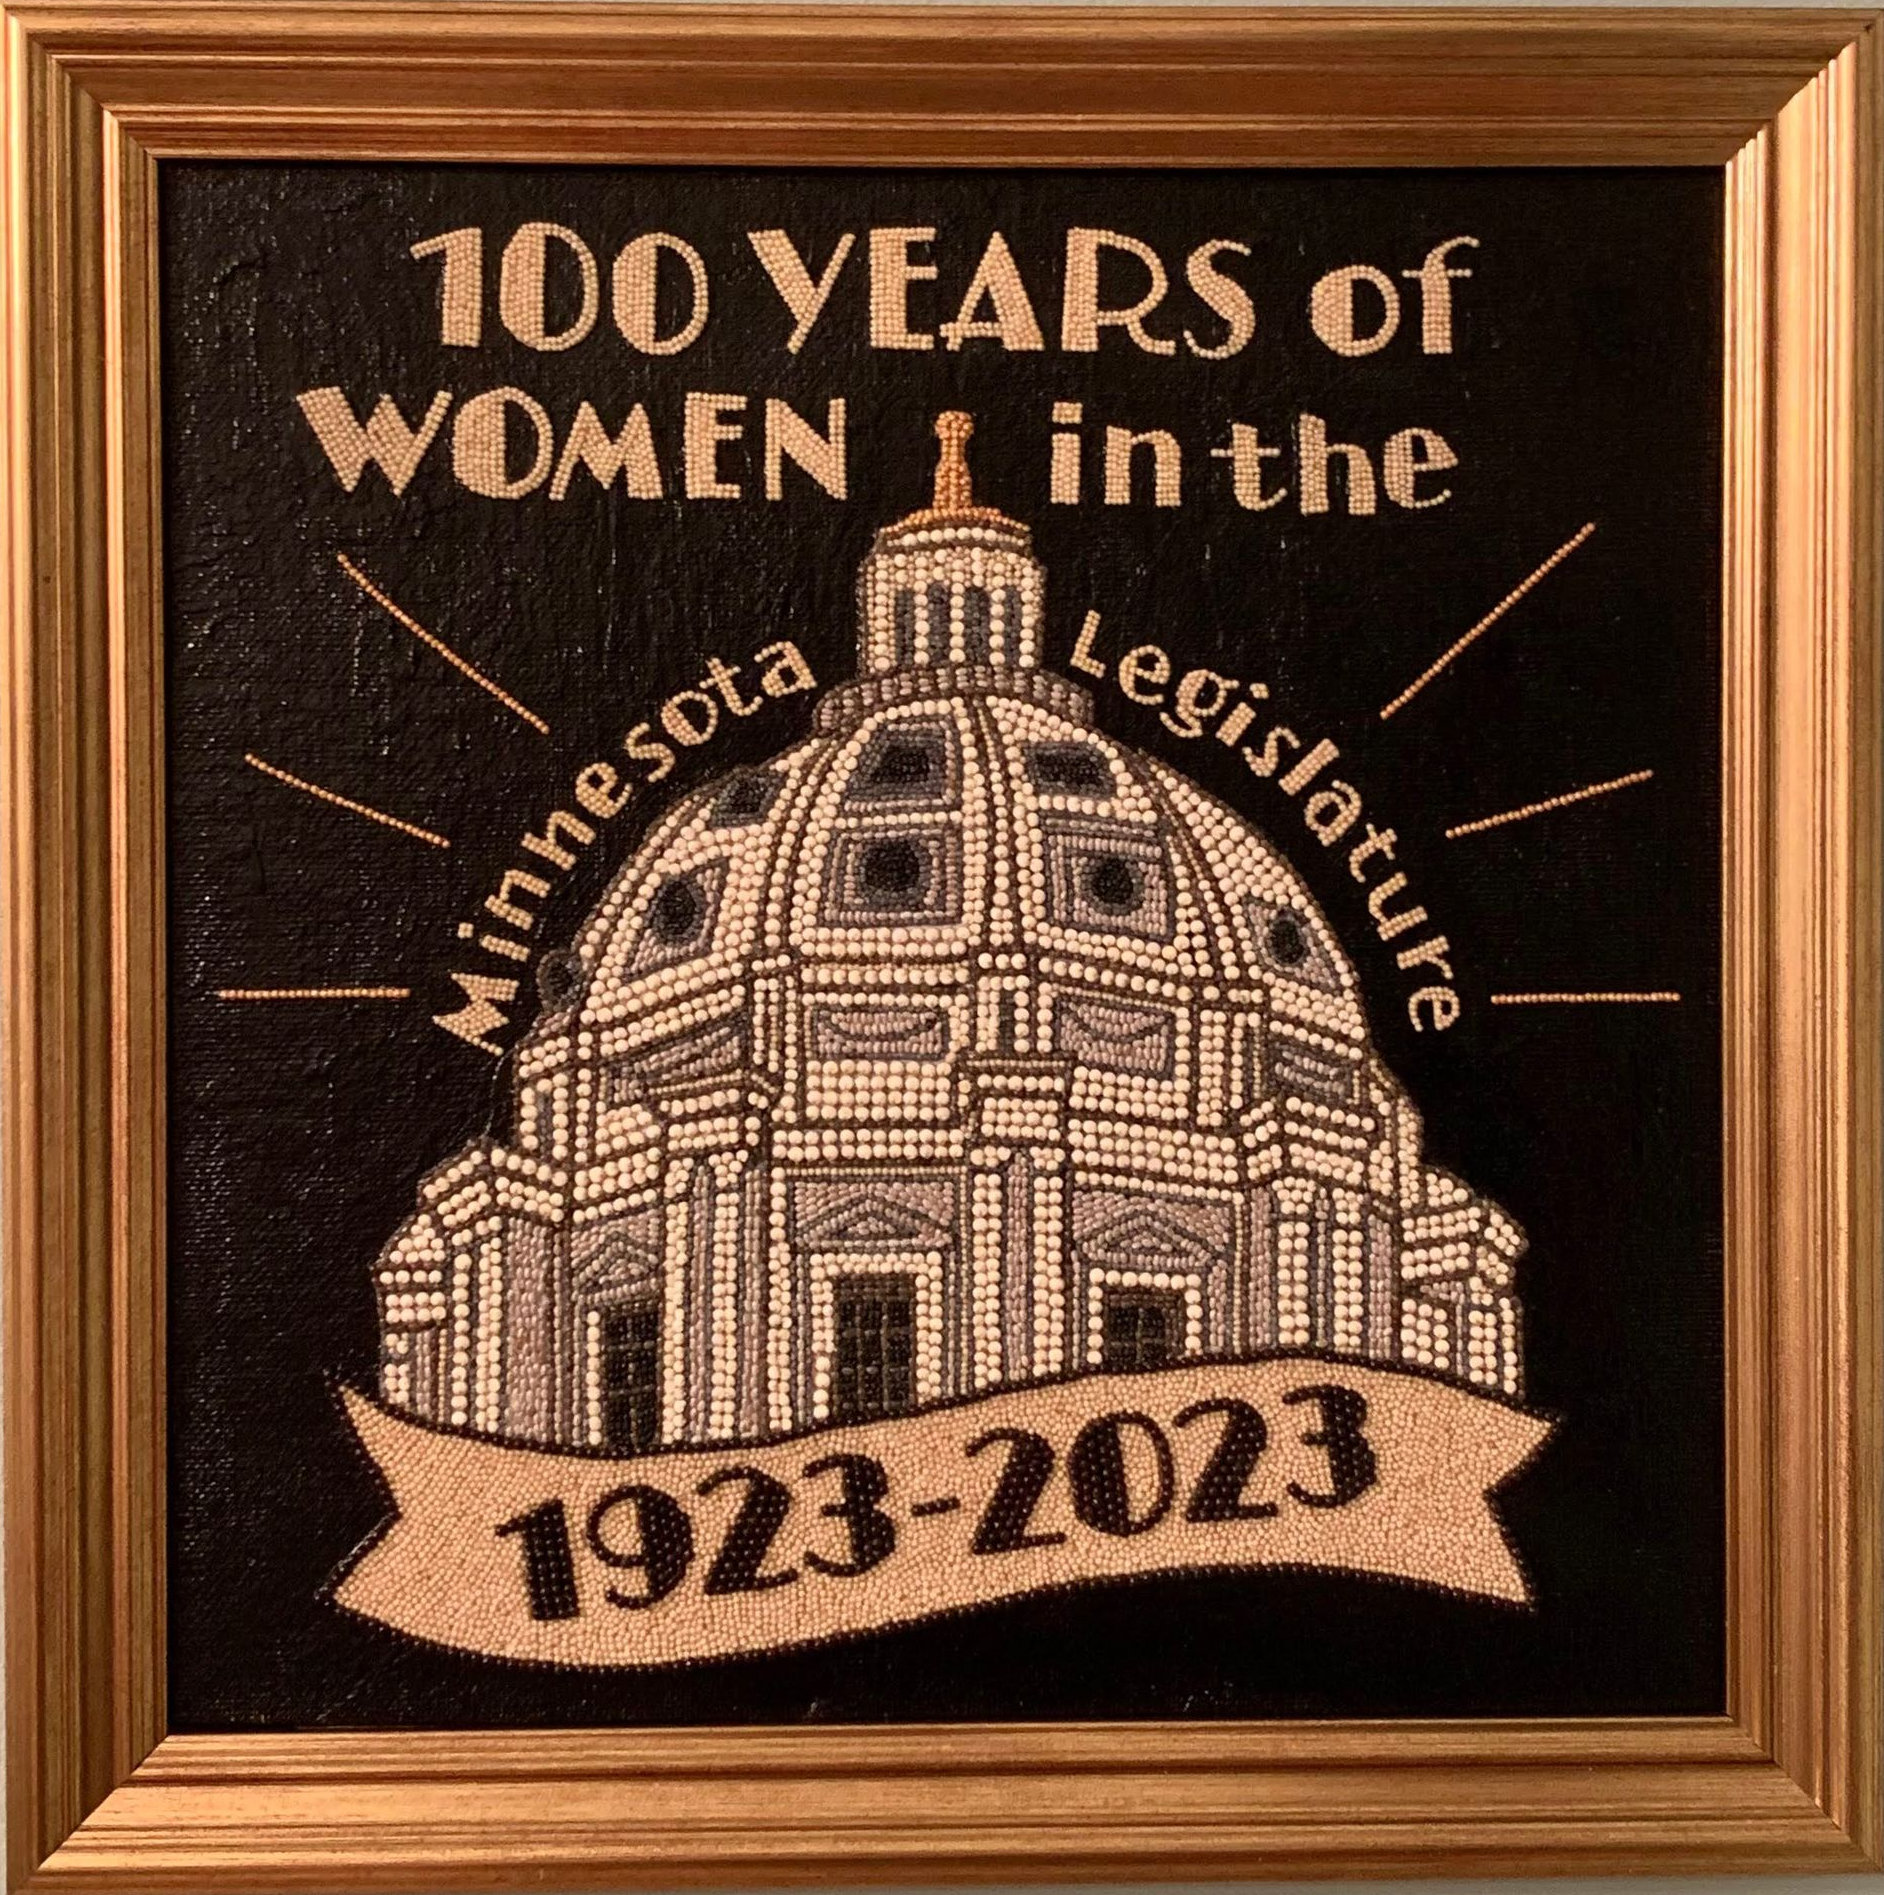 [Siena Leone-Getten 100 Years of Women in the Minnesota Legislature image]